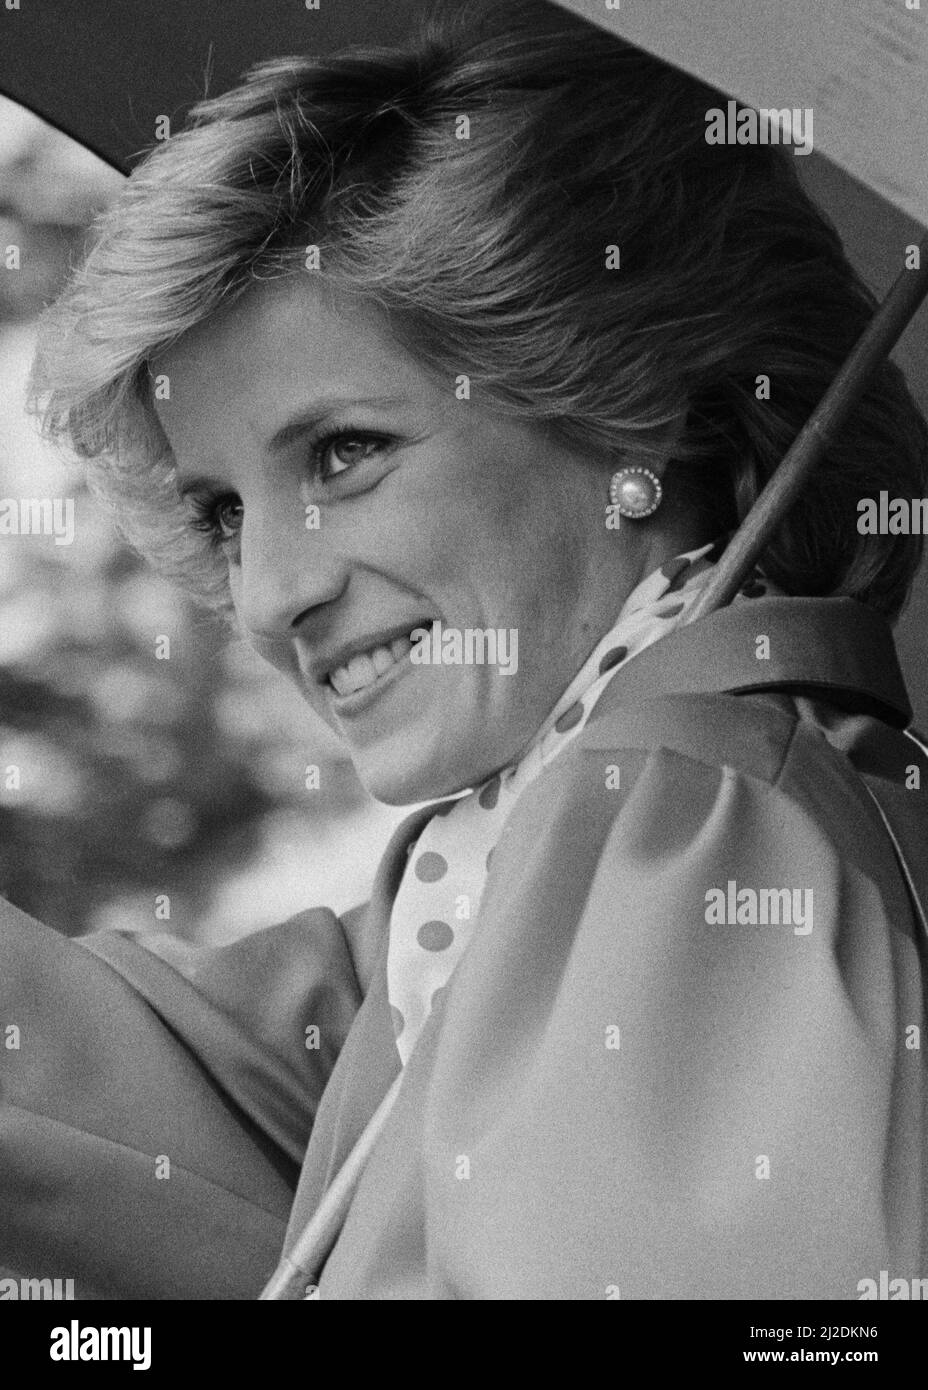 Ihre Königliche Hoheit Prinzessin Diana, die Prinzessin von Wales, besucht die Ipswich Agricultural Show, Ipswich, Suffolk. **DIES IST Ein AUSSCHNITT EINES ANDEREN BILDES AUCH IN DIESEM SET** Bild aufgenommen am 28.. Mai 1986 Stockfoto